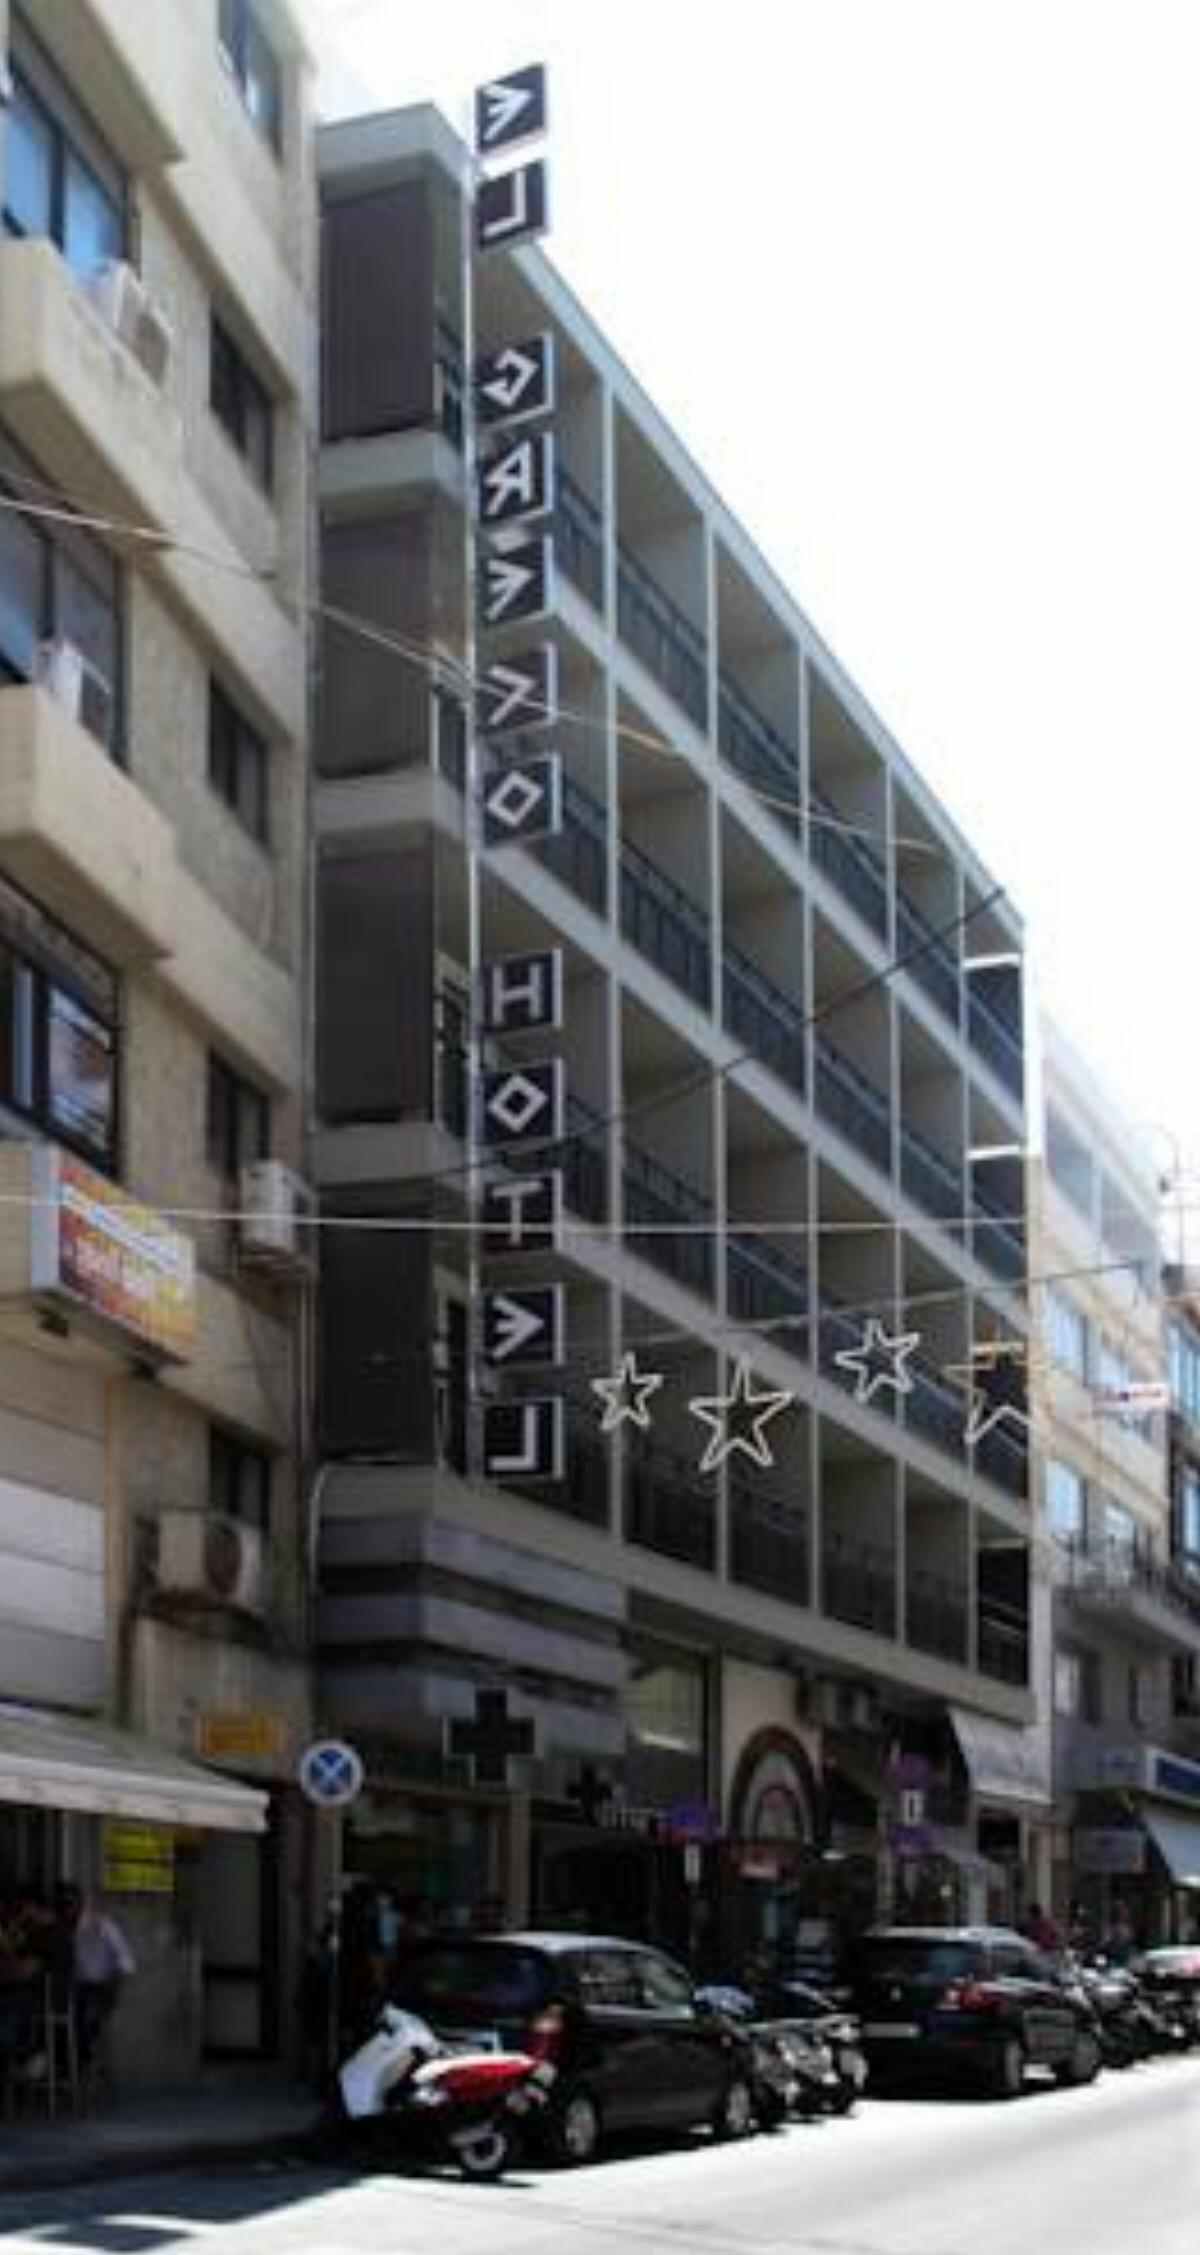 El Greco Hotel Hotel Heraklio Town Greece